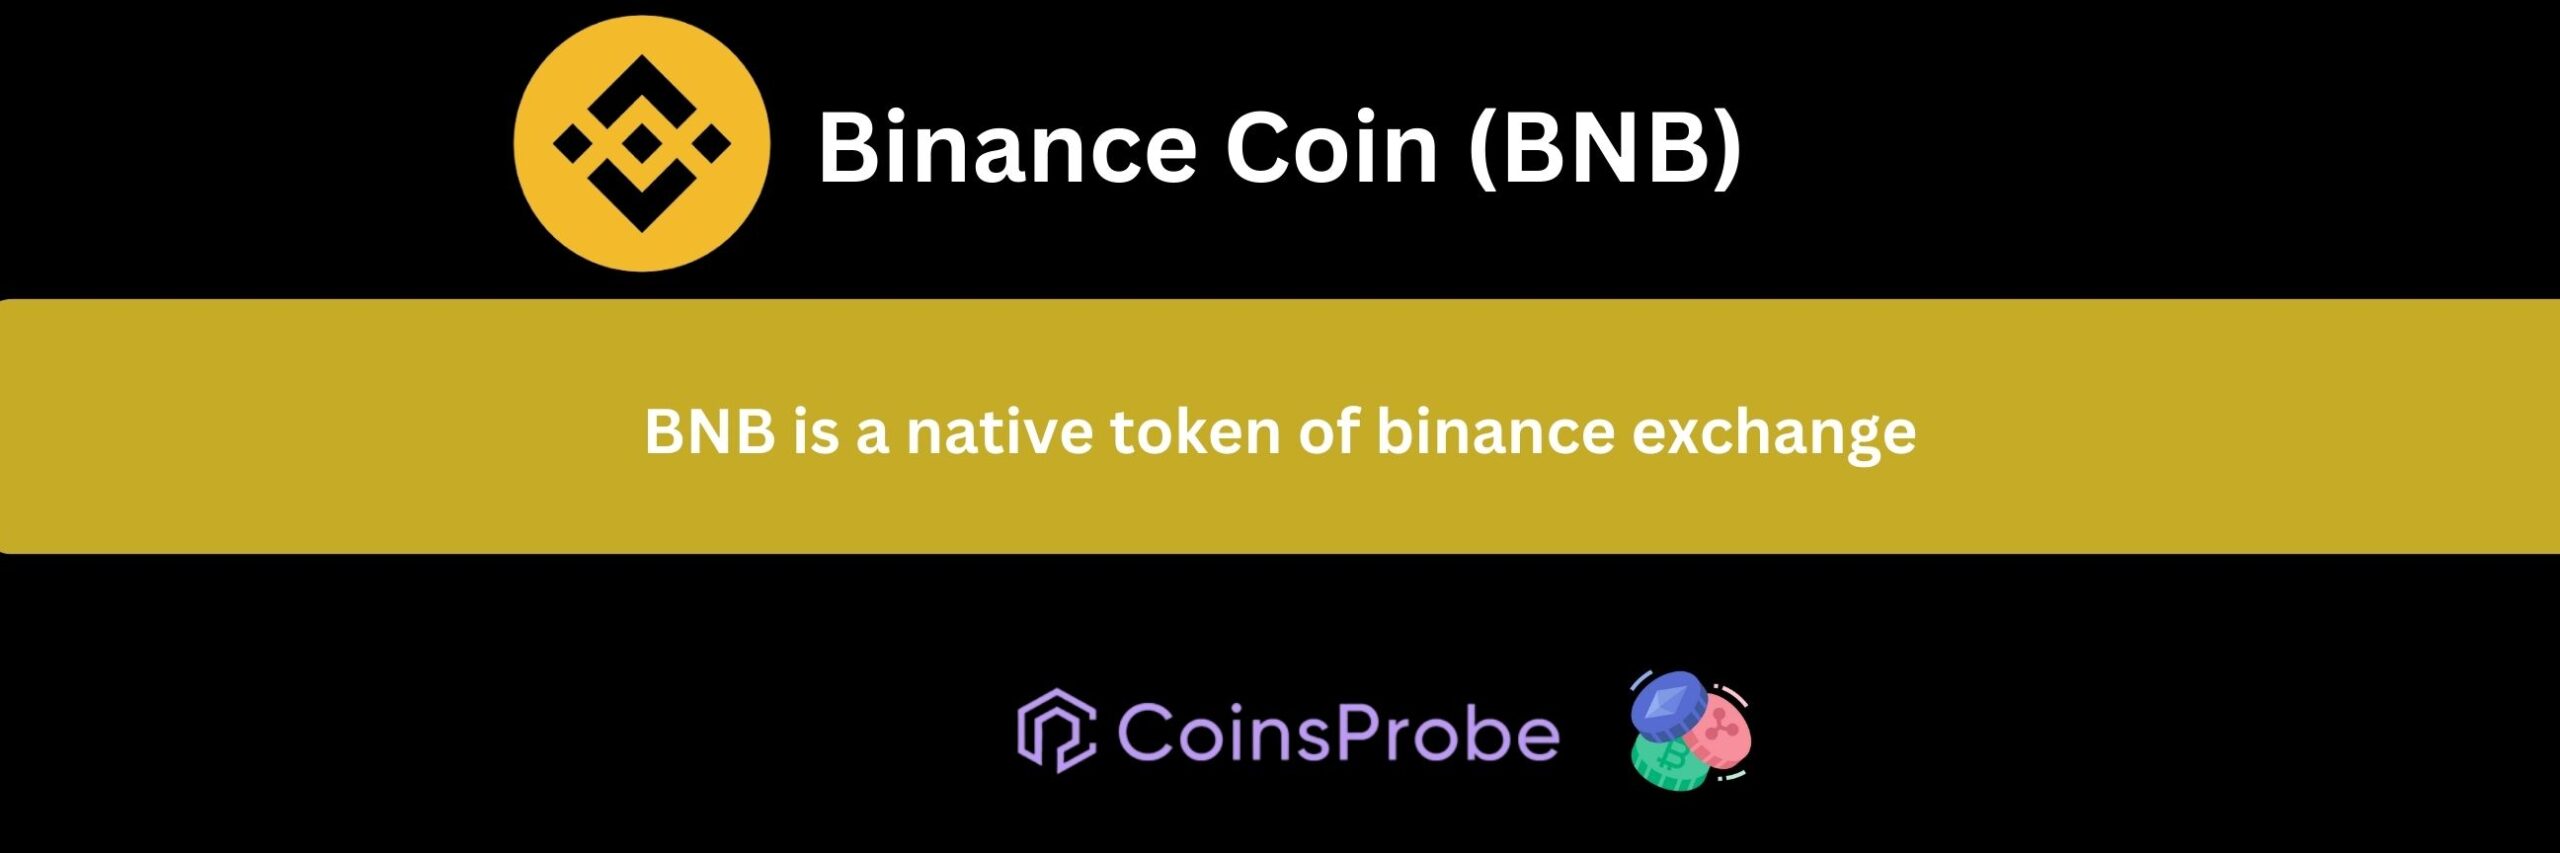 Binance Coin (BNB) 